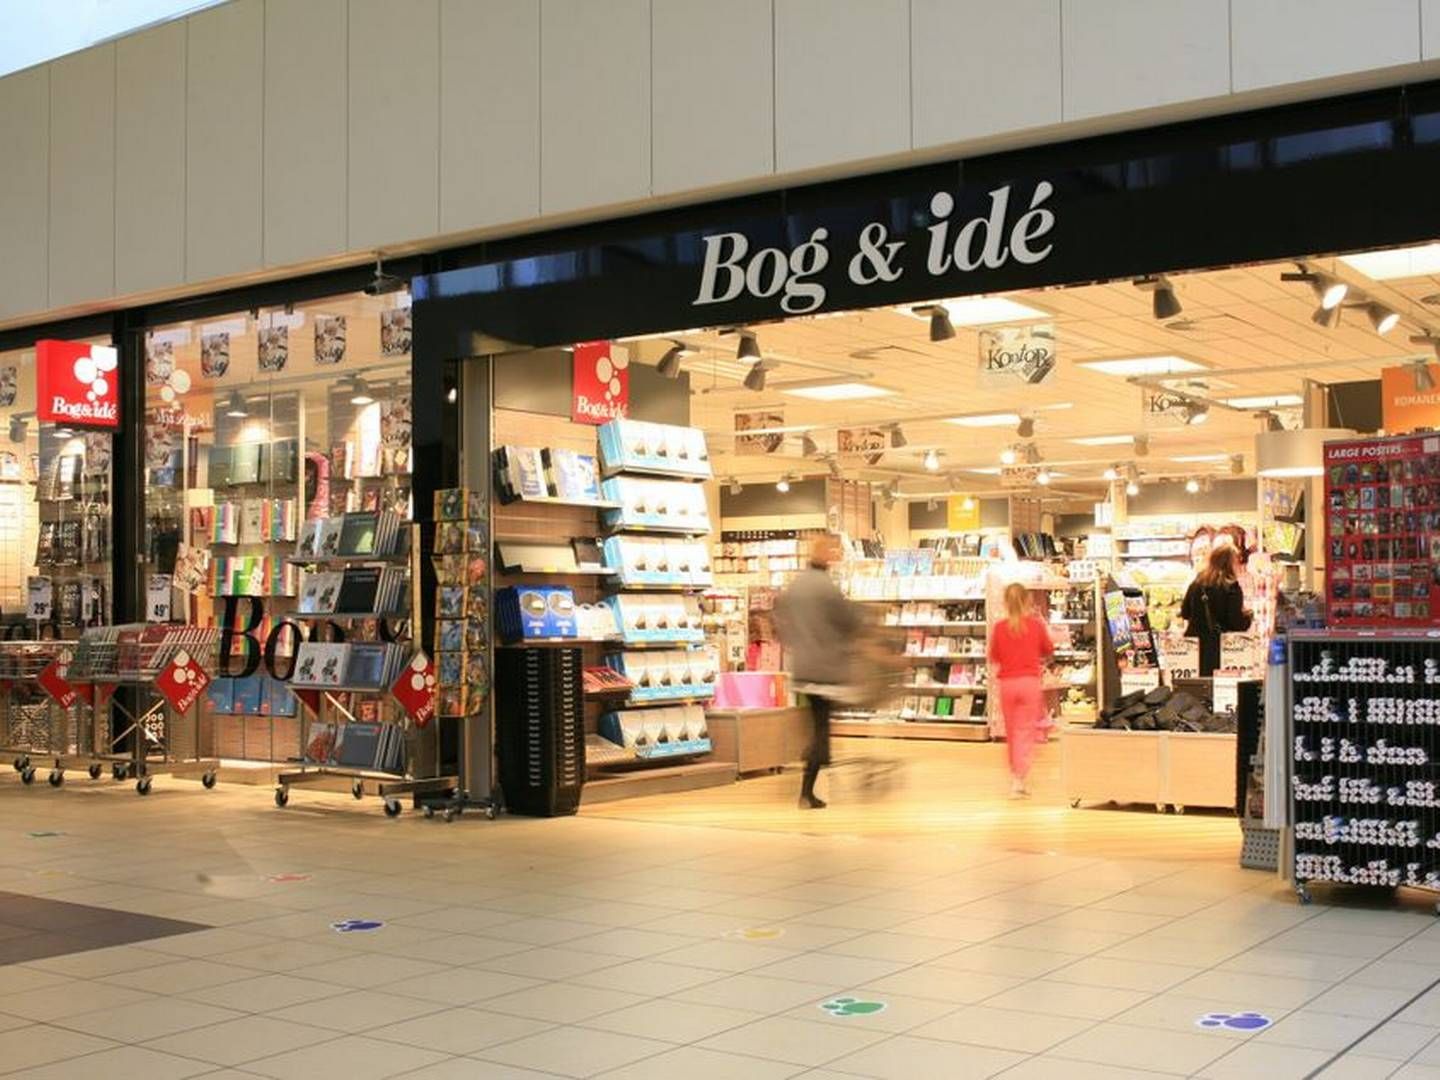 Indeks Retail er indkøbsselskab for bl.a. Bog & Idé, der er Danmarks største kæde af boghandlere. | Foto: Pr/indeks Retail